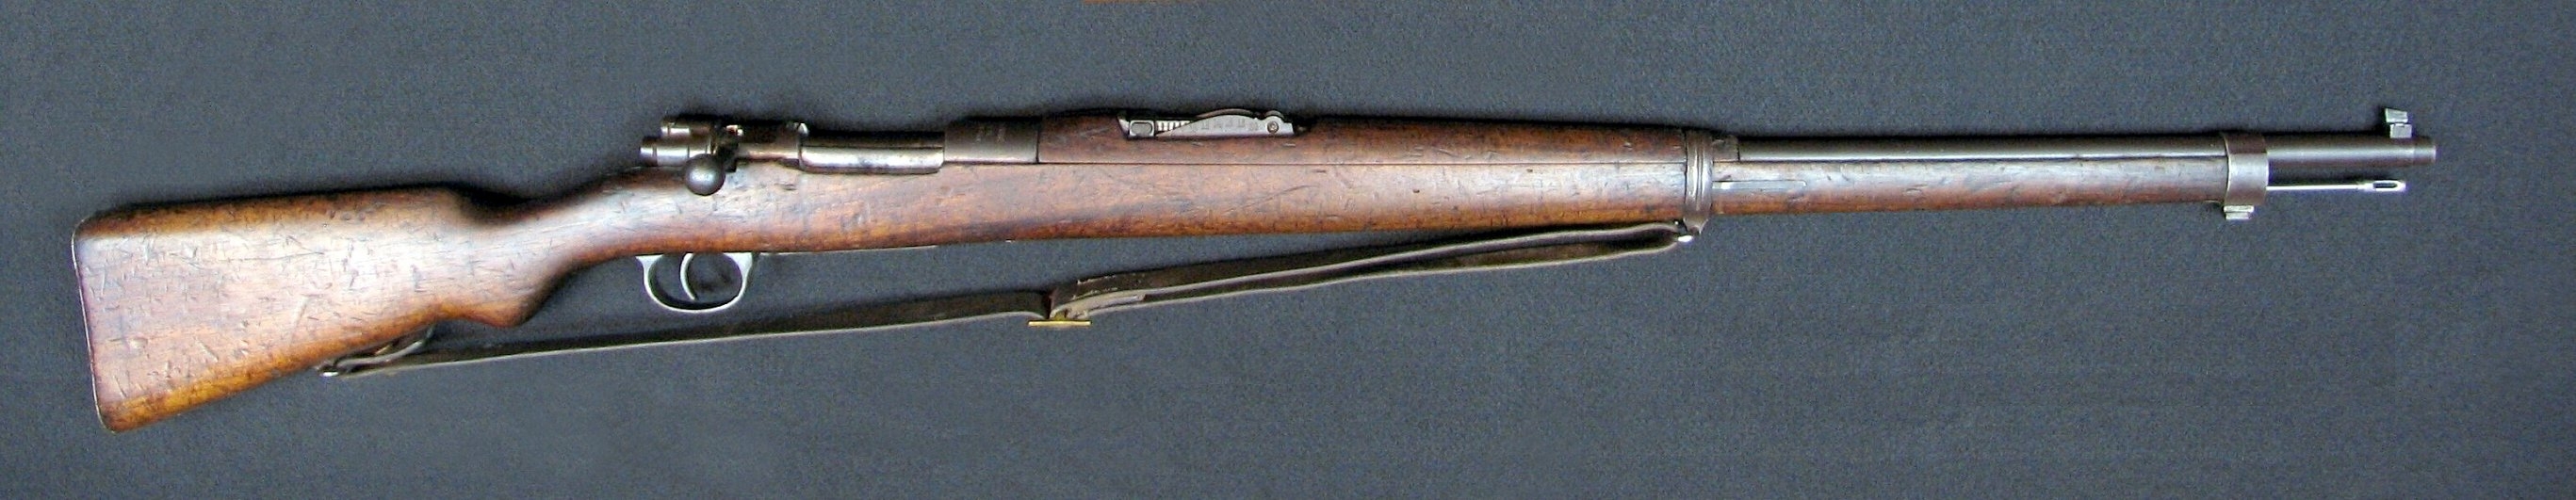 M-1910